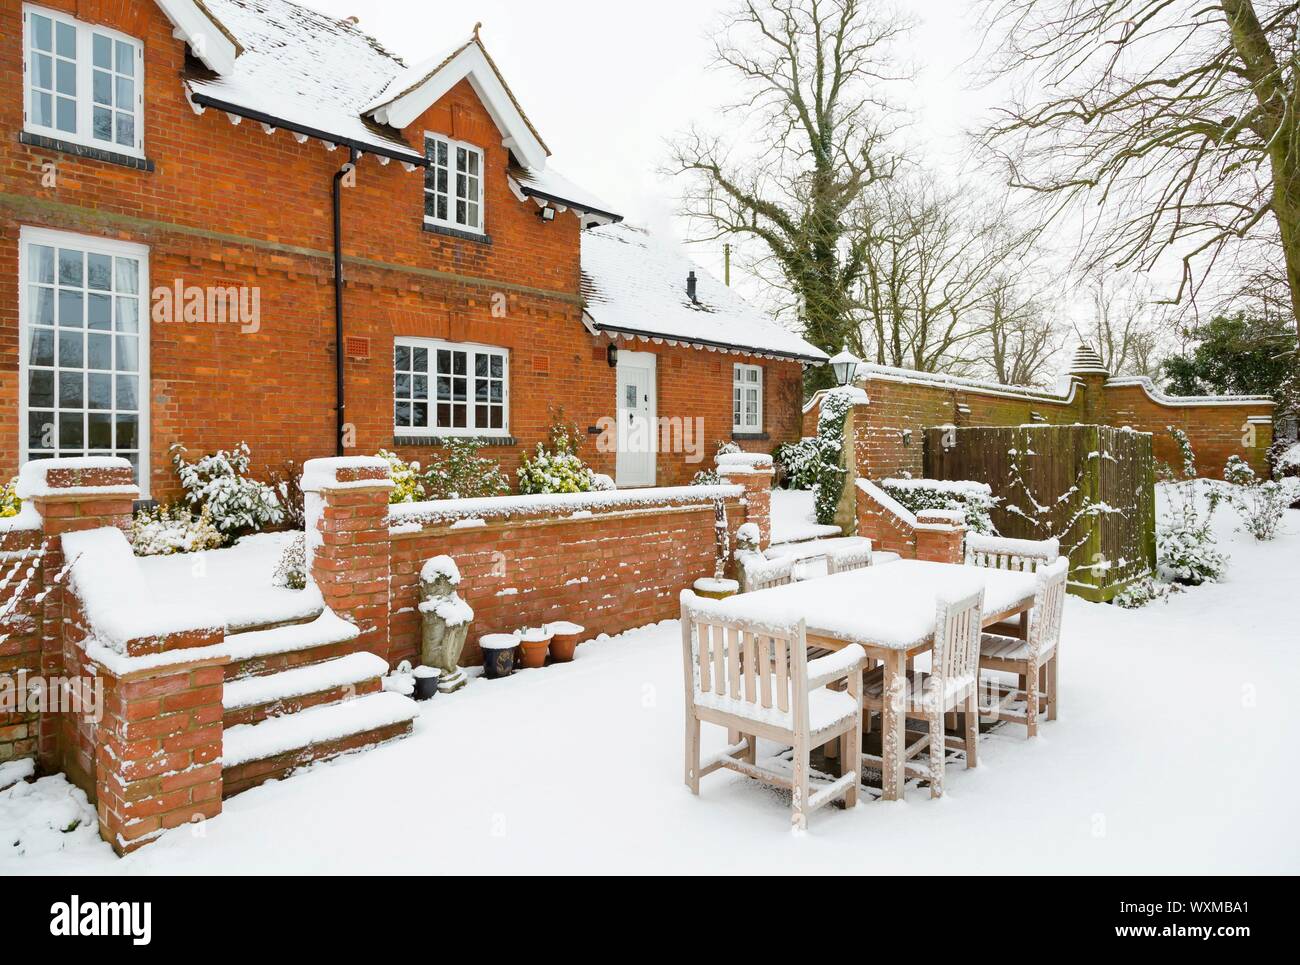 Hôtel particulier de la famille de luxe anglais, couverte de neige en hiver, UK Banque D'Images